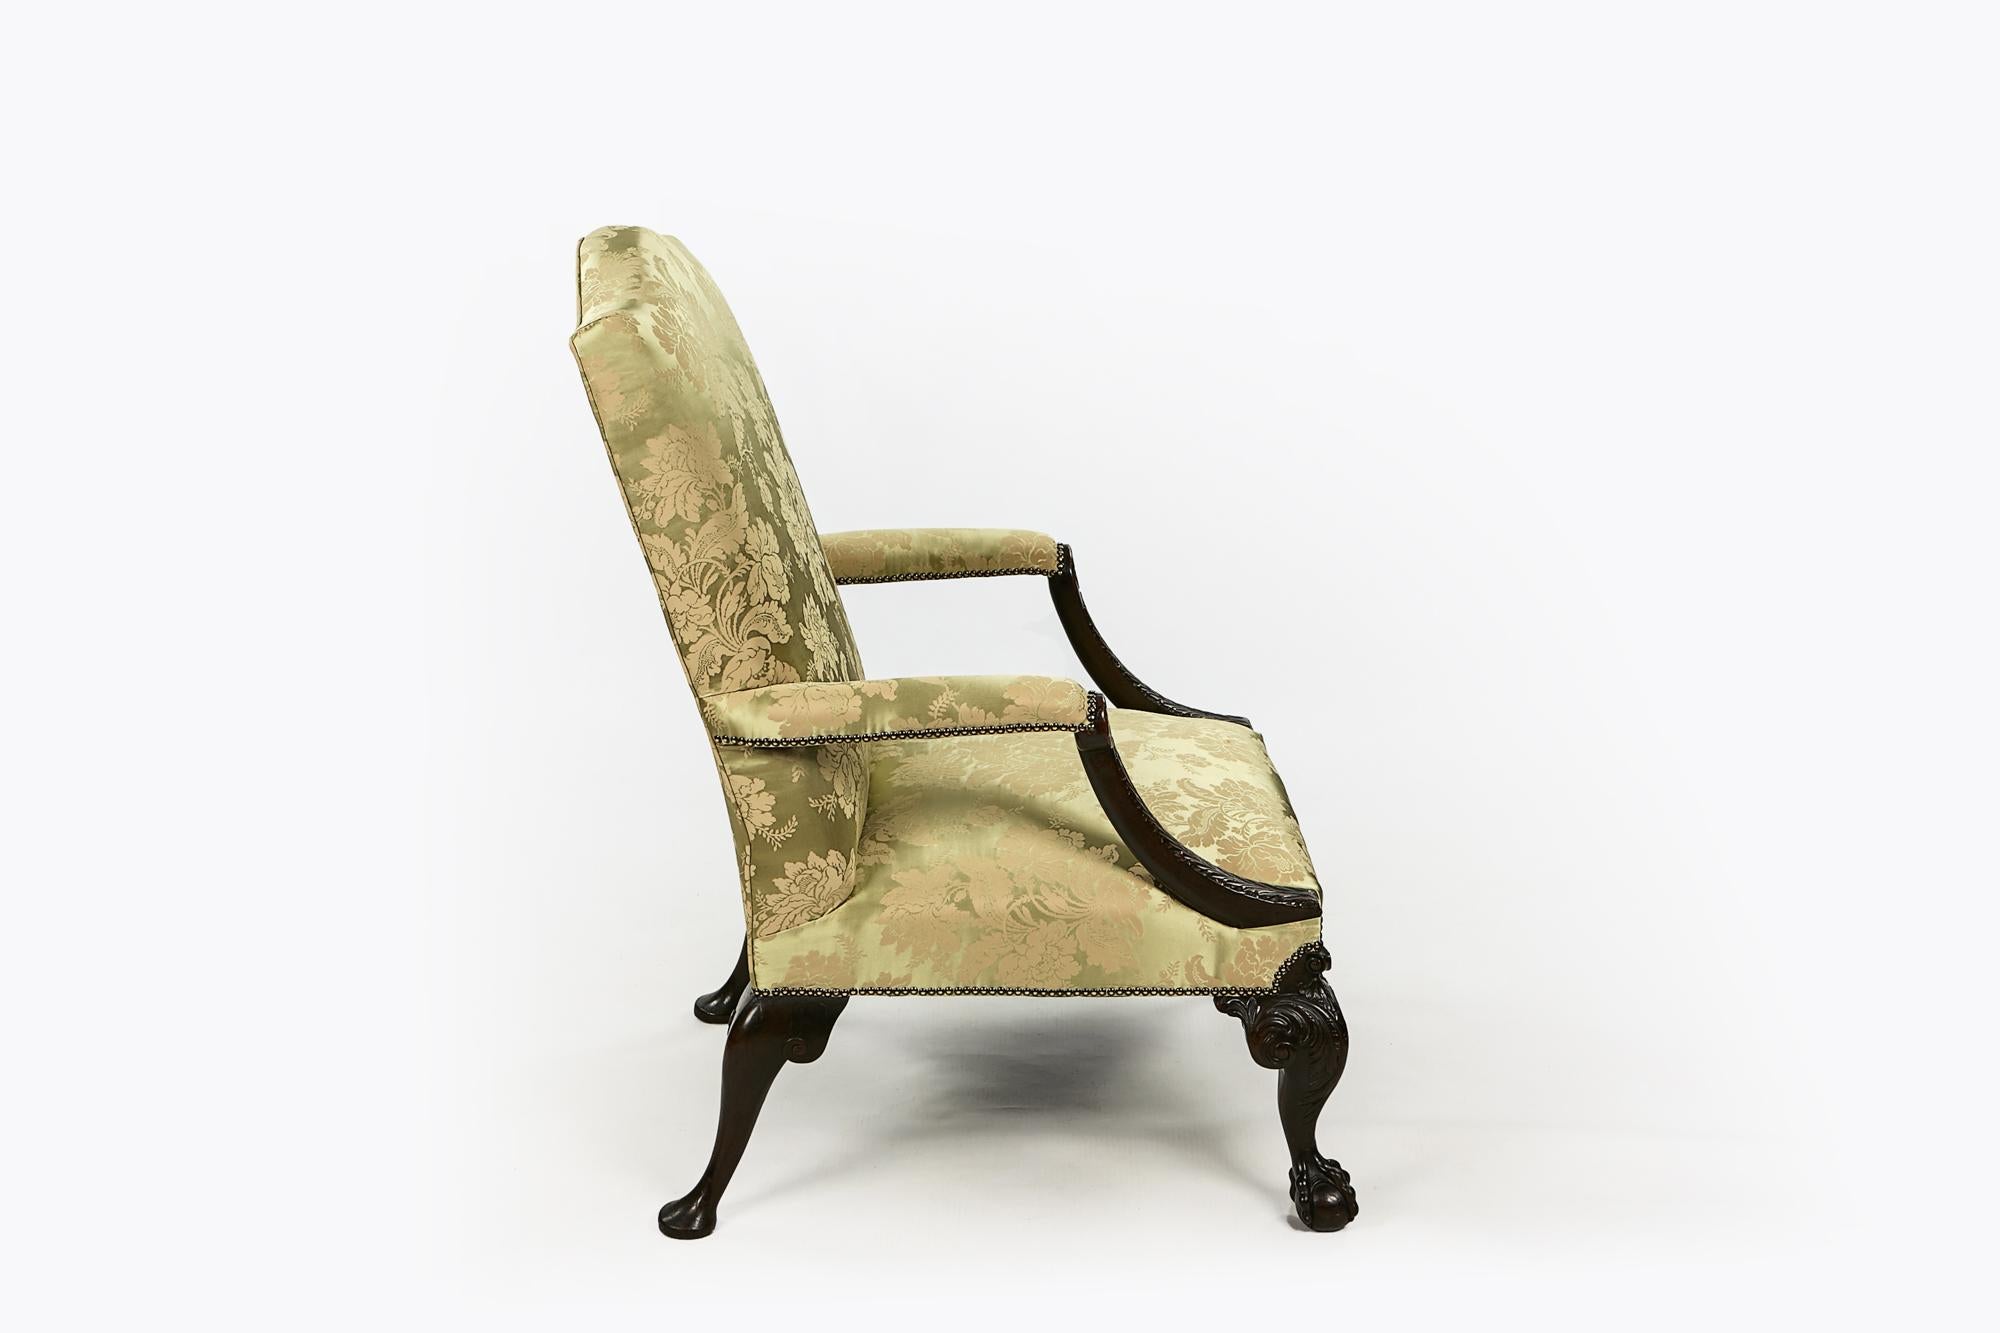 Paire de fauteuils Gainsborough en acajou, rembourrés, du début du 19e siècle. Le dossier carré, arqué et rembourré, surmontant des accoudoirs rembourrés avec des terminaisons sculptées de motifs d'acanthe, repose sur un pied cabriole avec des